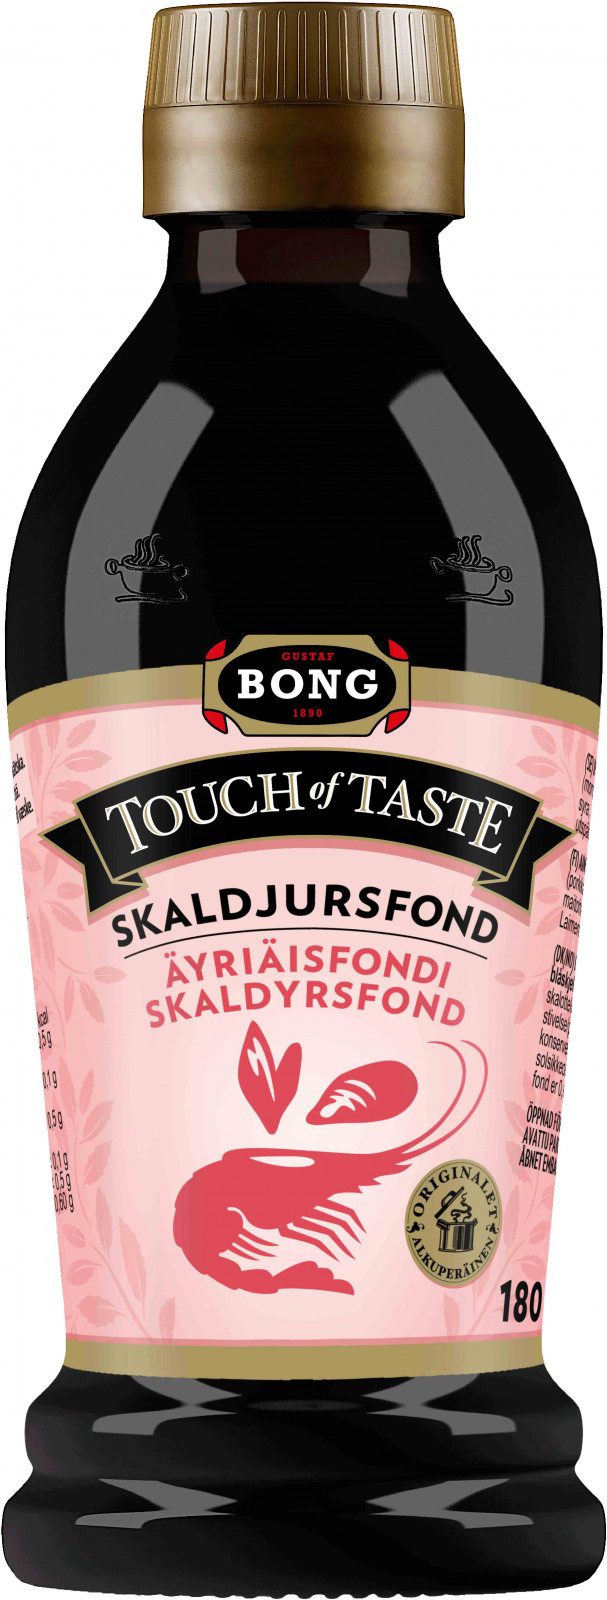 Bong touch of taste - Skaldjursfond